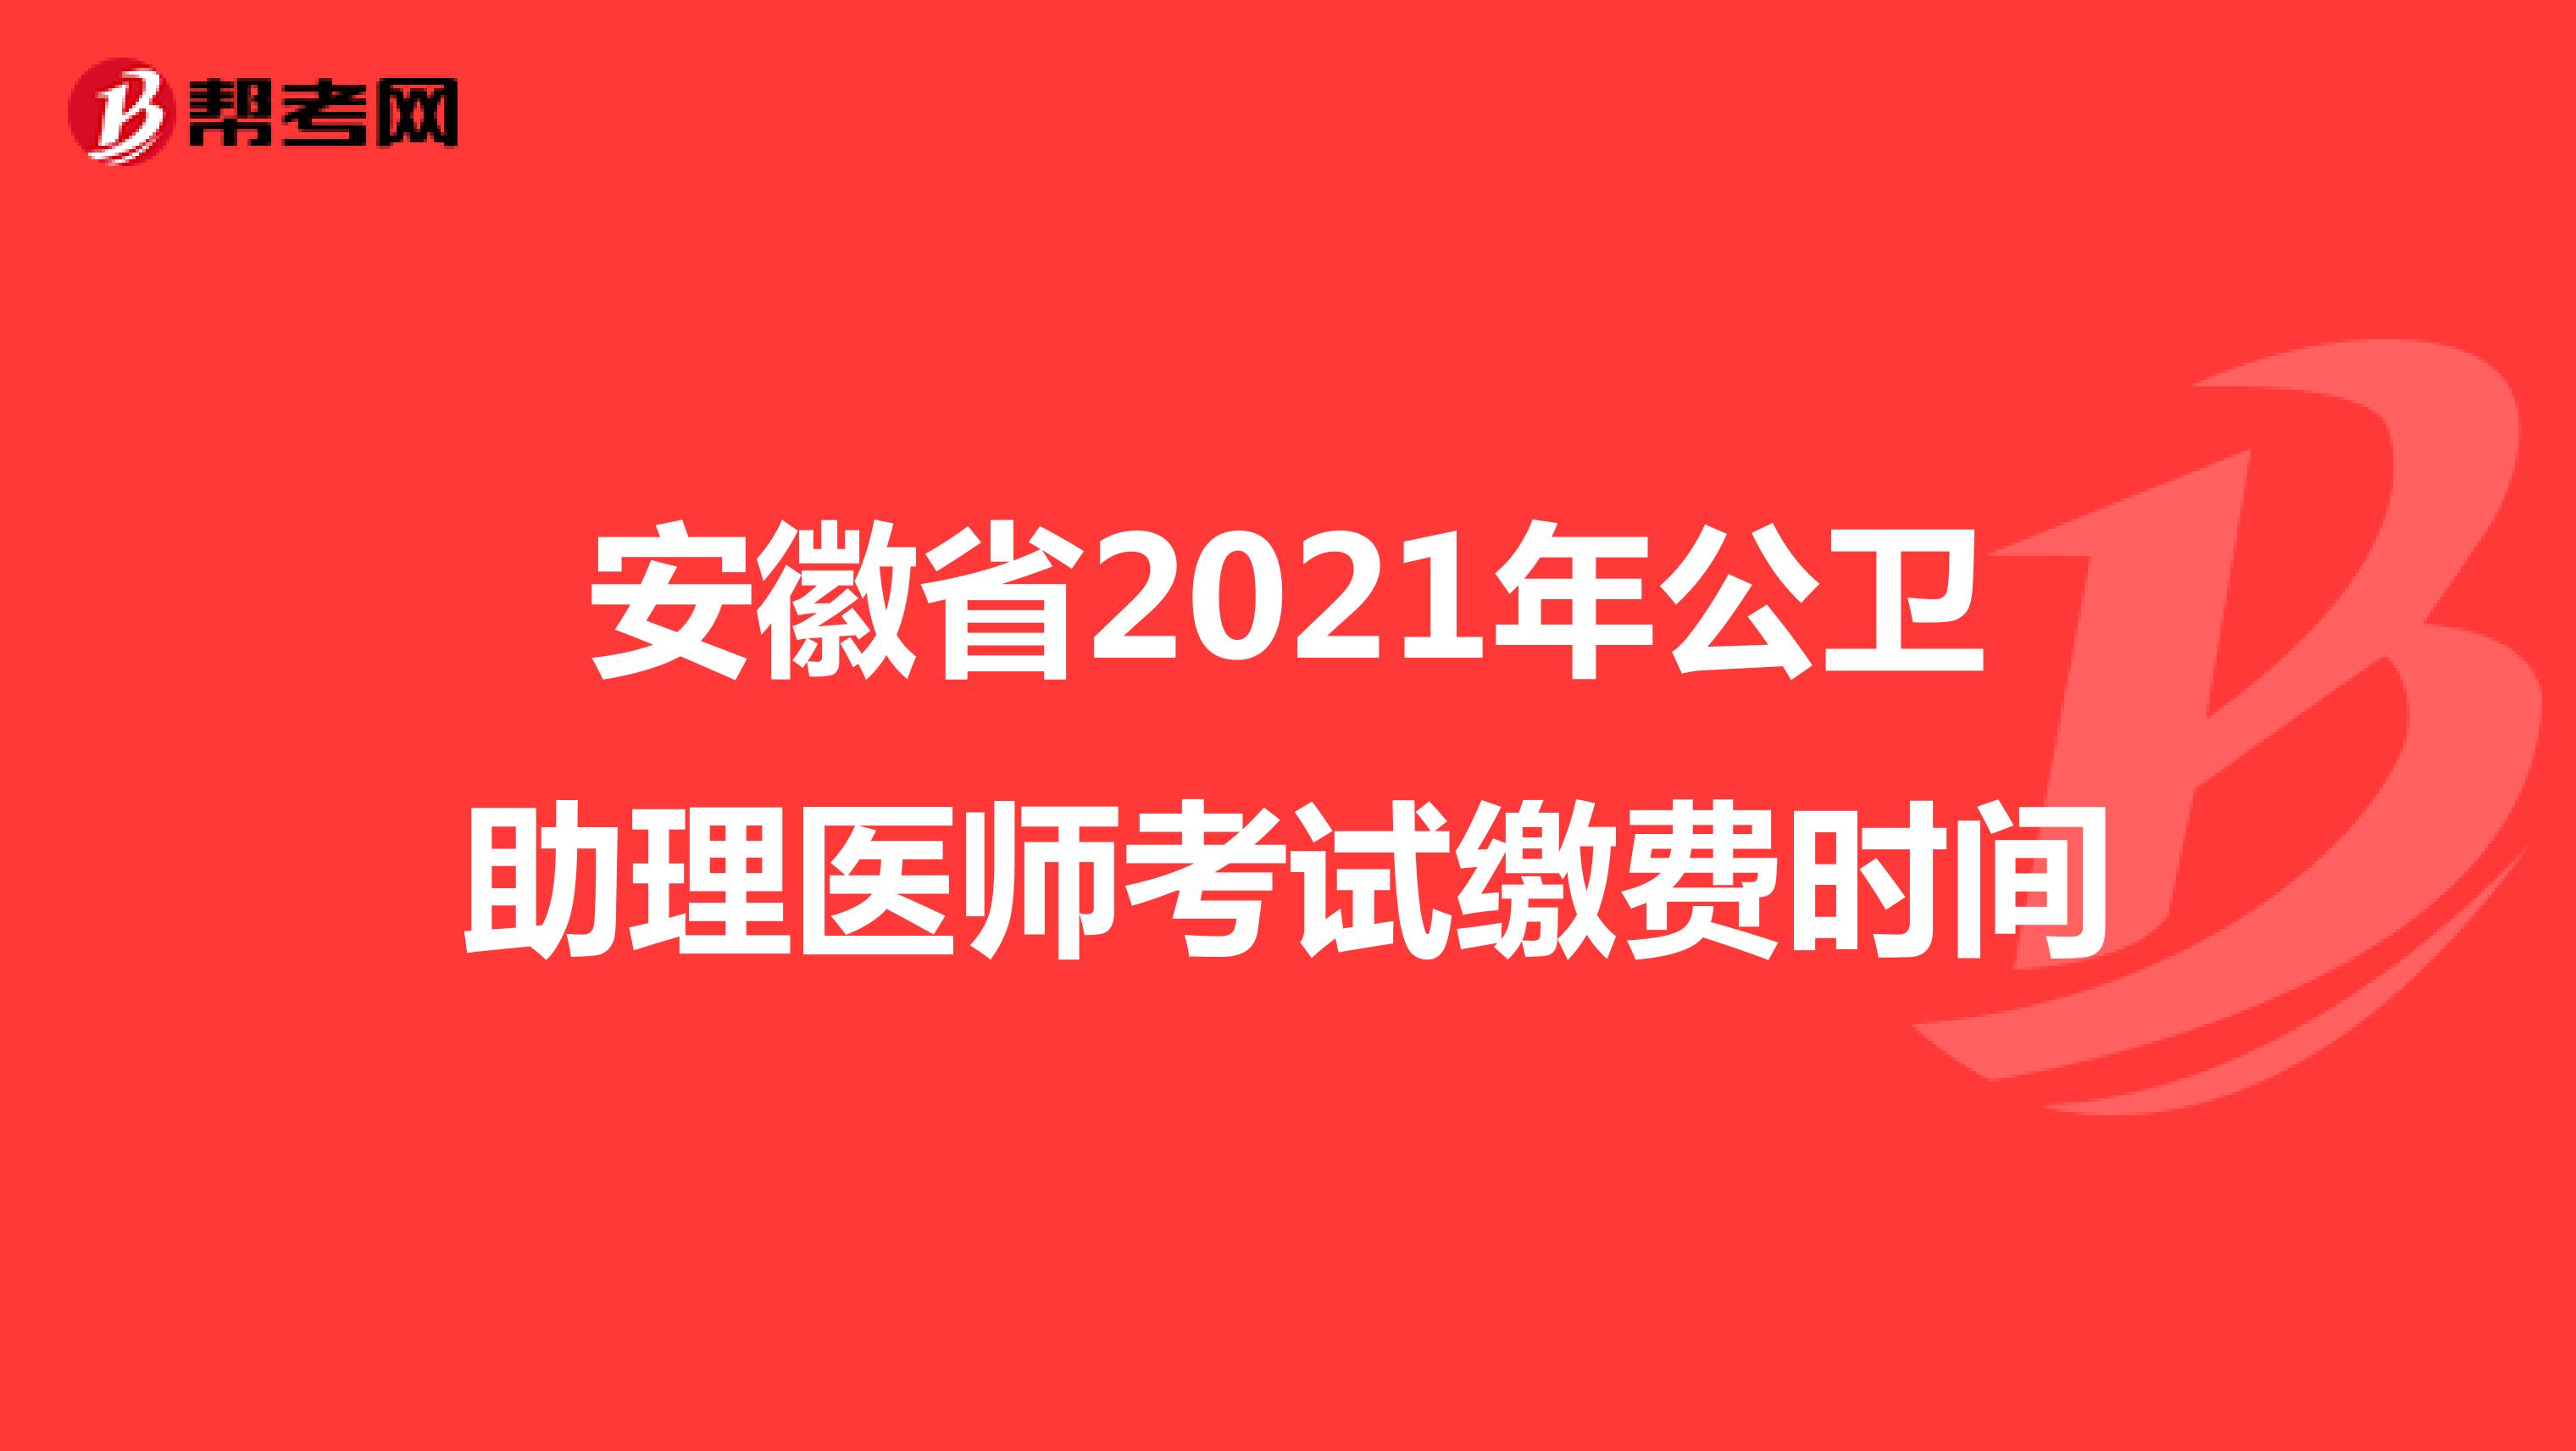 安徽省2021年公卫助理医师考试缴费时间